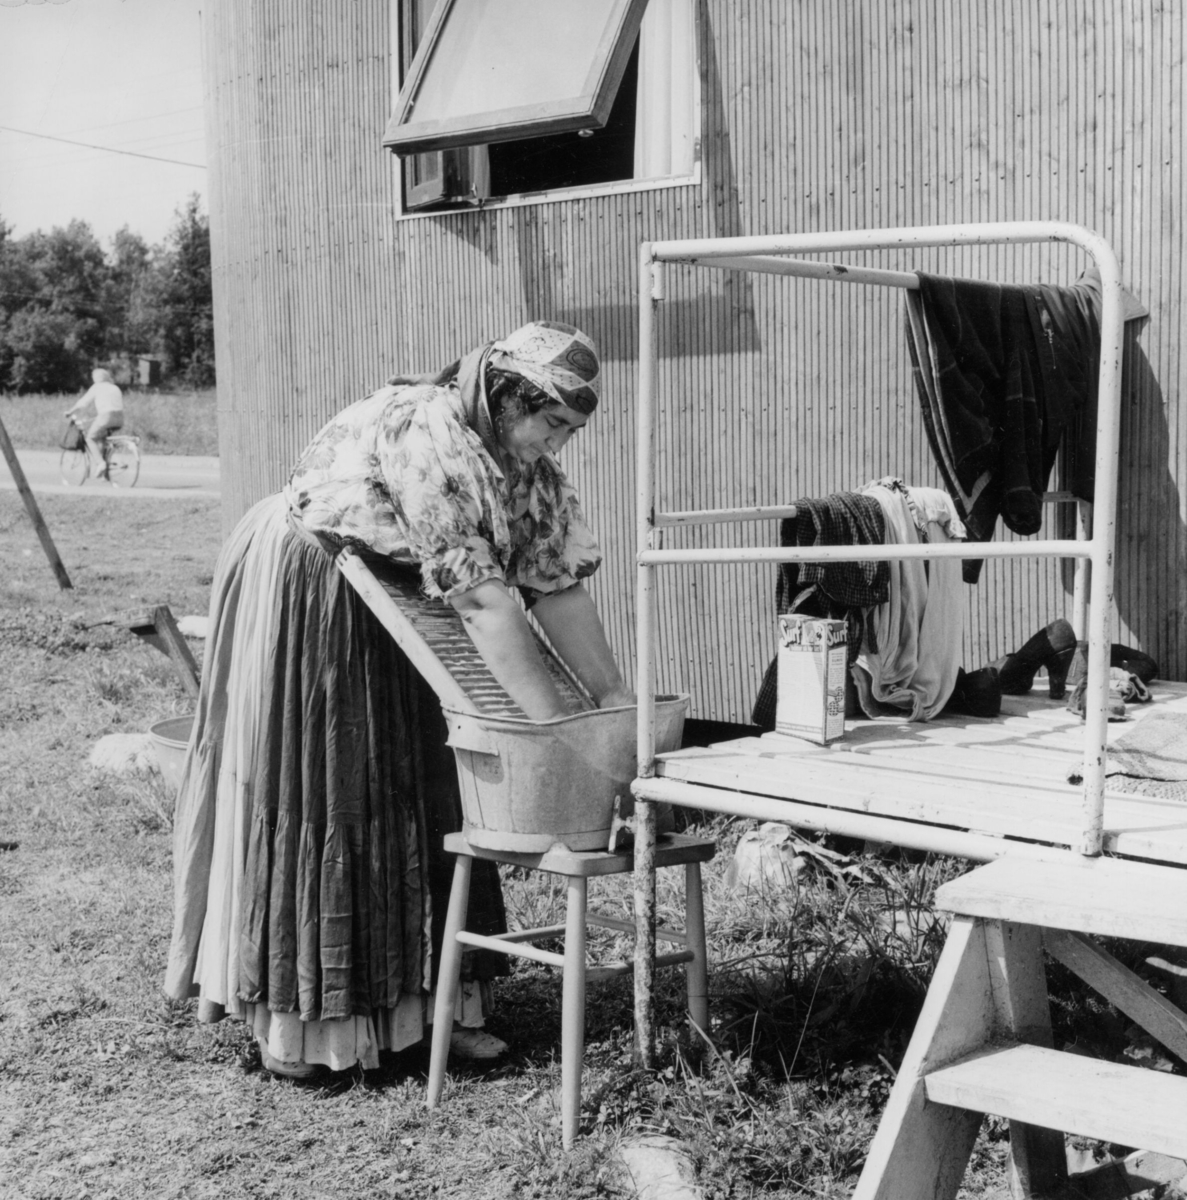 En romsk kvinnar tvättar utanför sin bostadsvagn i Tantolunden, Stockholm. Hon bär förkläde och en huvudduk.